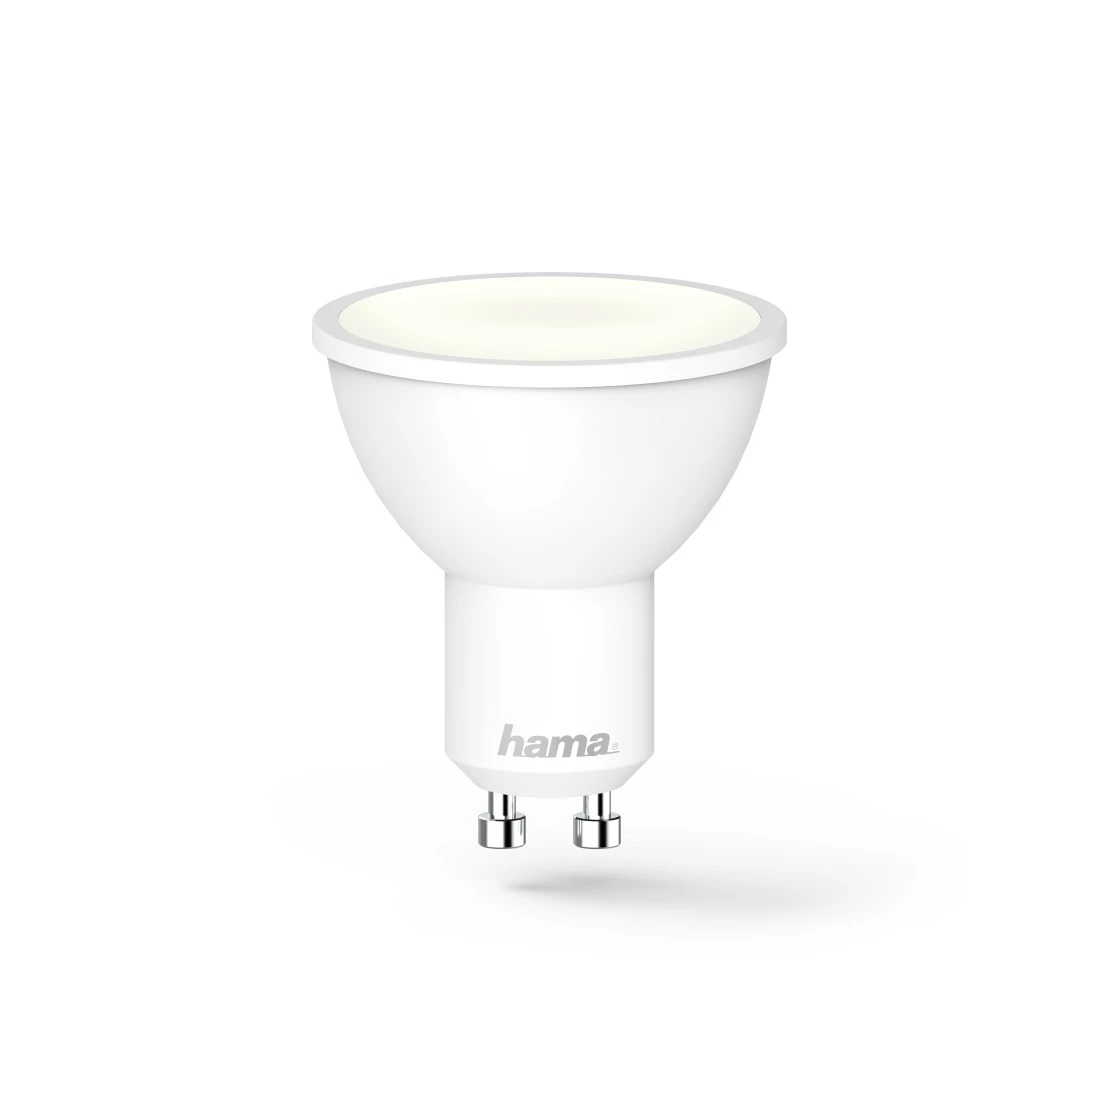 dimmbar, für Sprach-/App-Steuerung, 5,5W, Weiß Hama WLAN-LED-Lampe, GU10, Refl., |